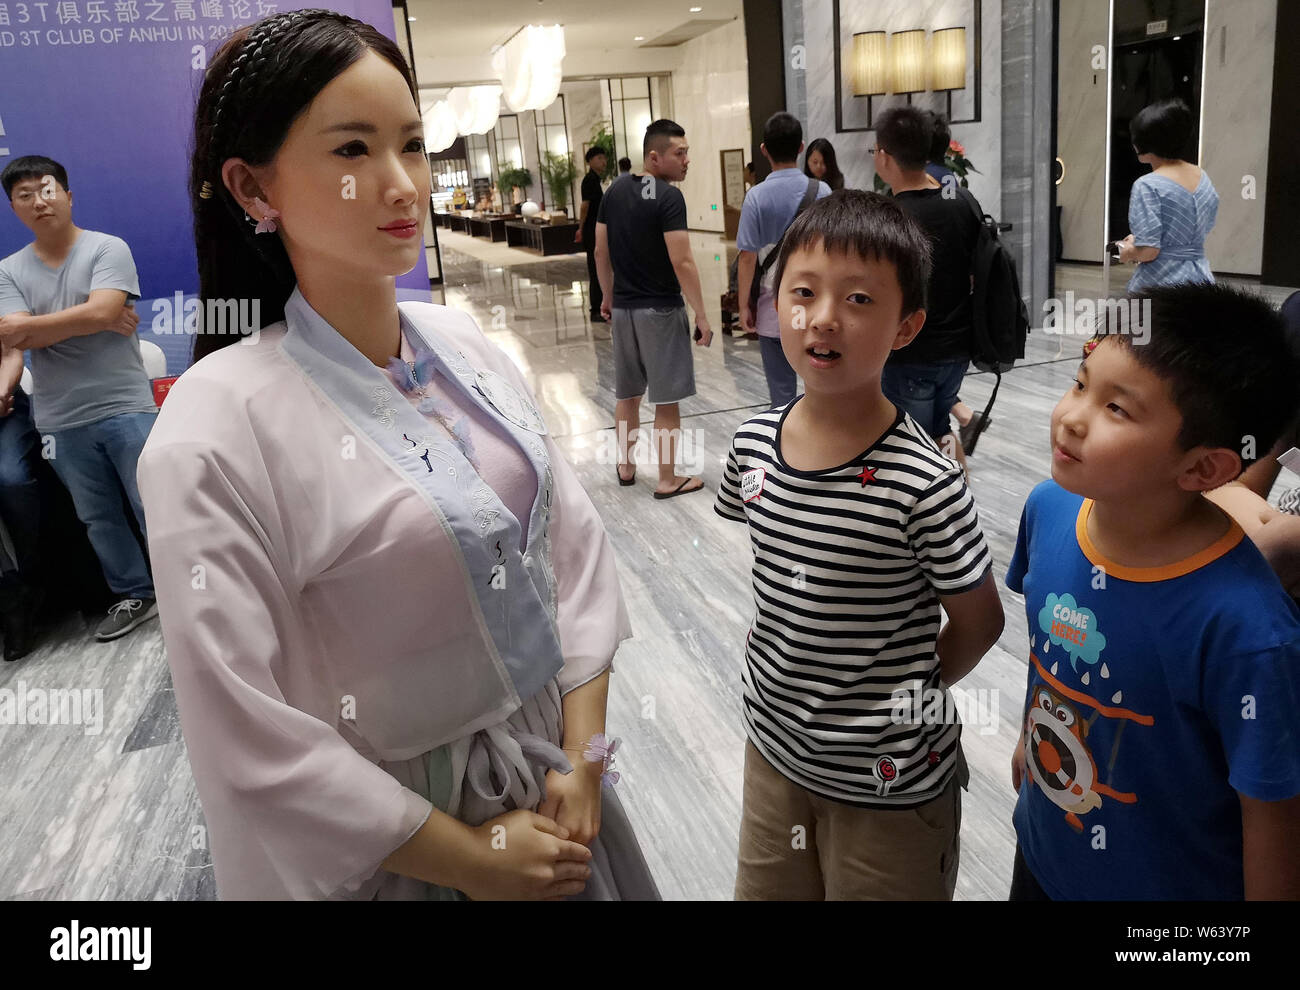 Robot humanoide Señora Wei, hermana de robot Jia Jia, acoge a los huéspedes  en un foro celebrado en la ciudad de Hefei, provincia de Anhui, China  oriental, el 18 de septiembre de